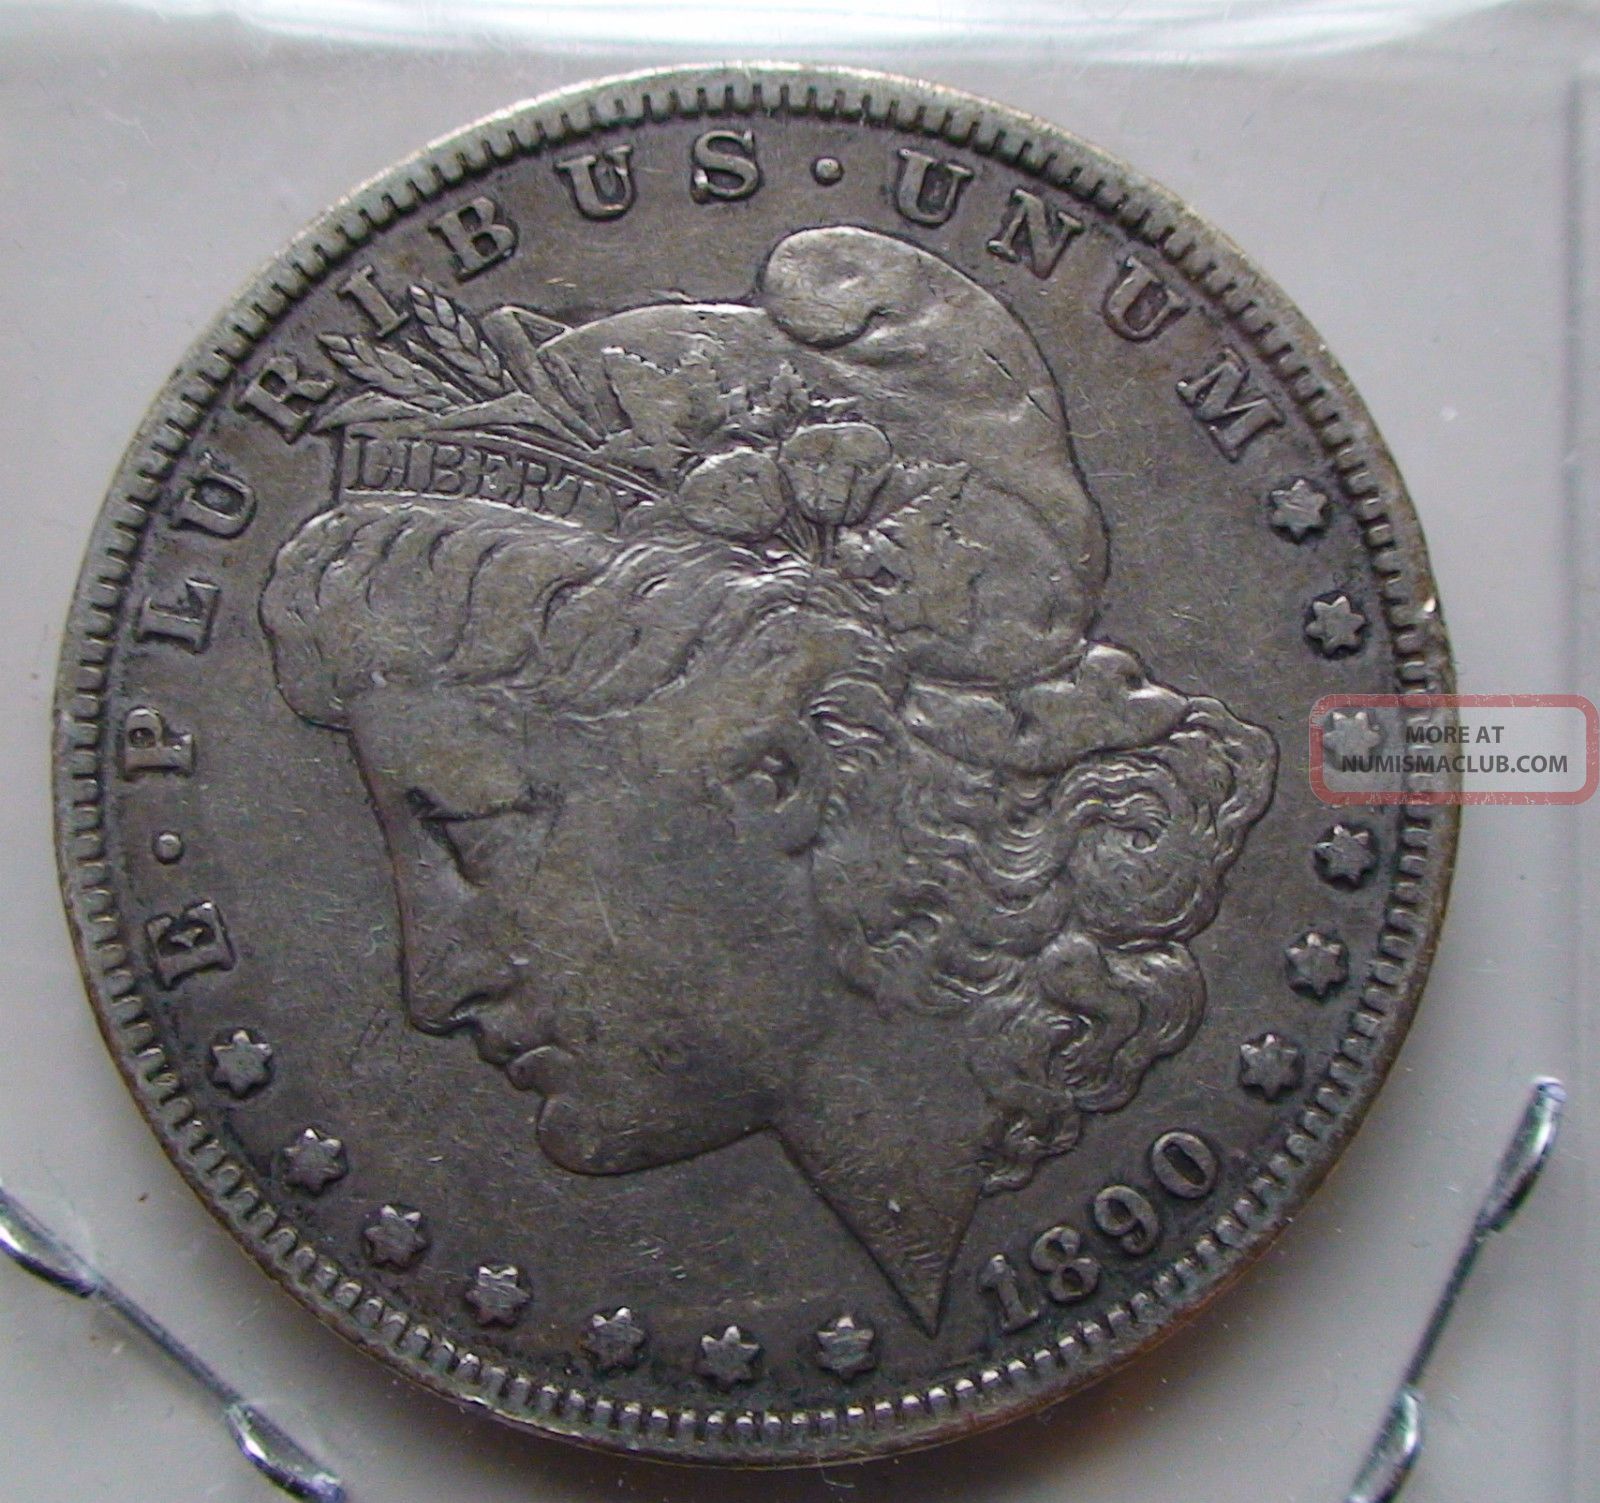 1890 O Morgan Silver Dollar Coin